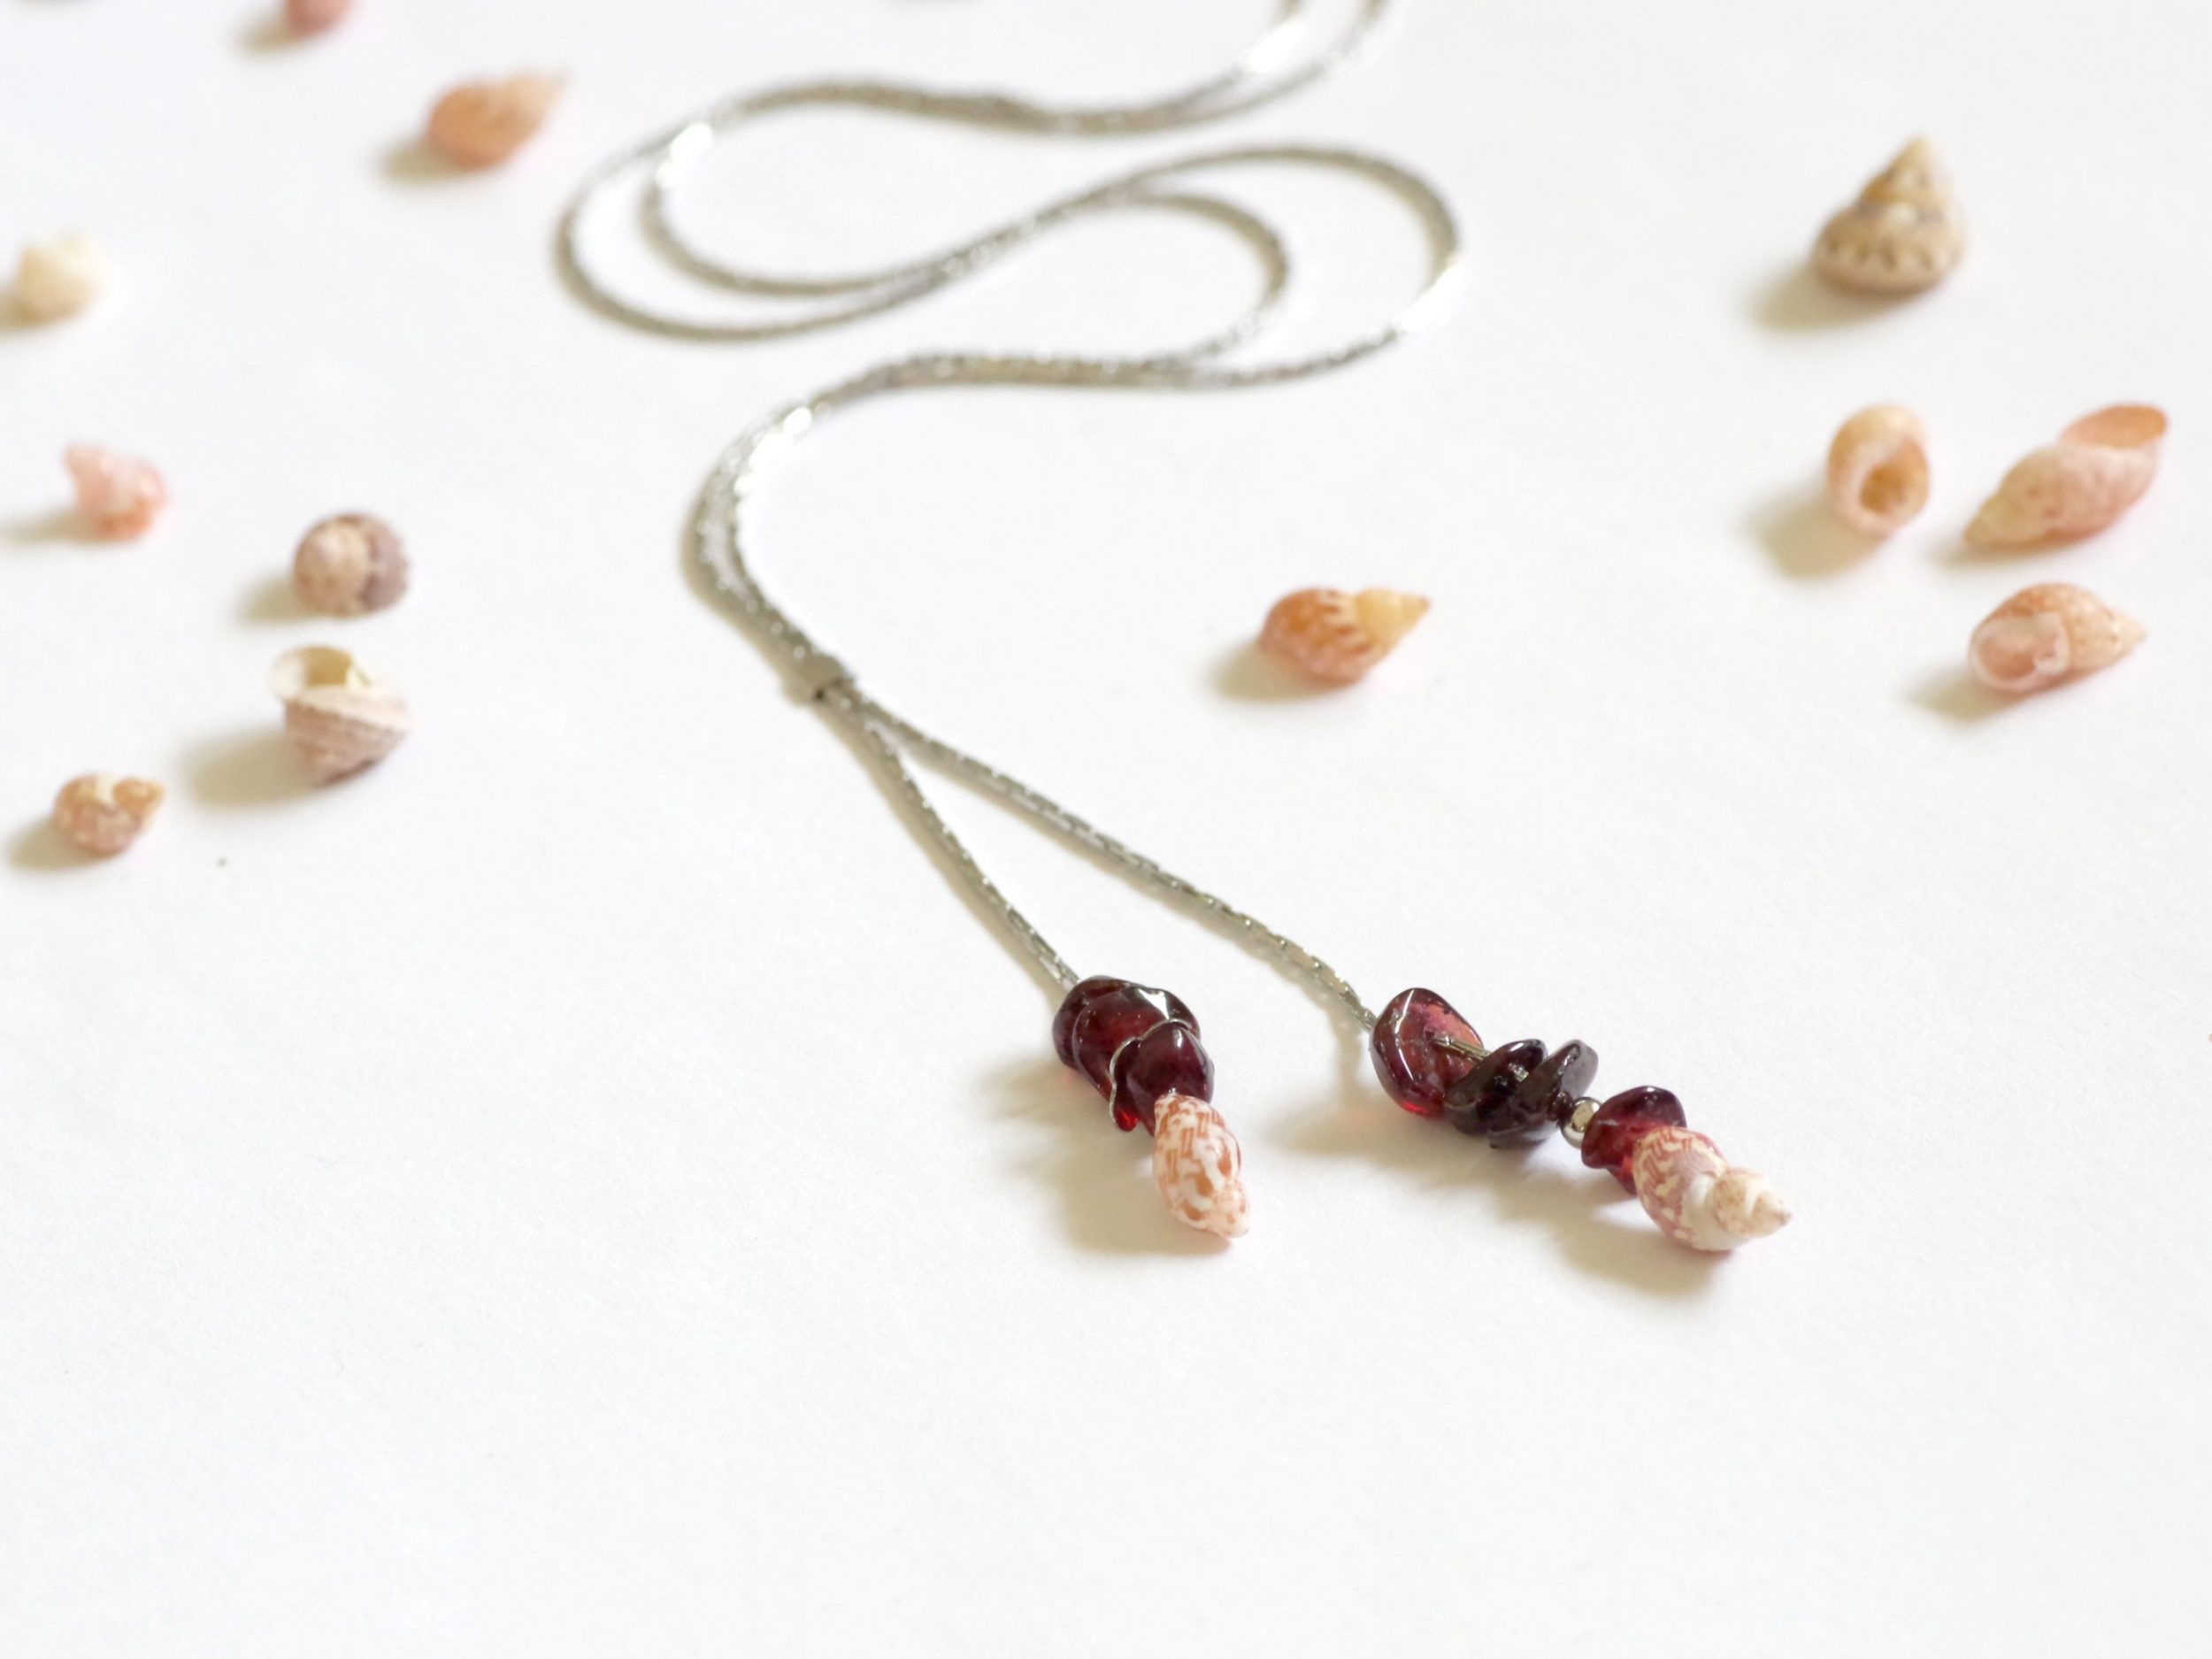 collier minimaliste : chaîne très fine en inox , les deux bouts de la chaîne forment deux pendentifs, avec quelques pierres de grenats et un mini coquillage